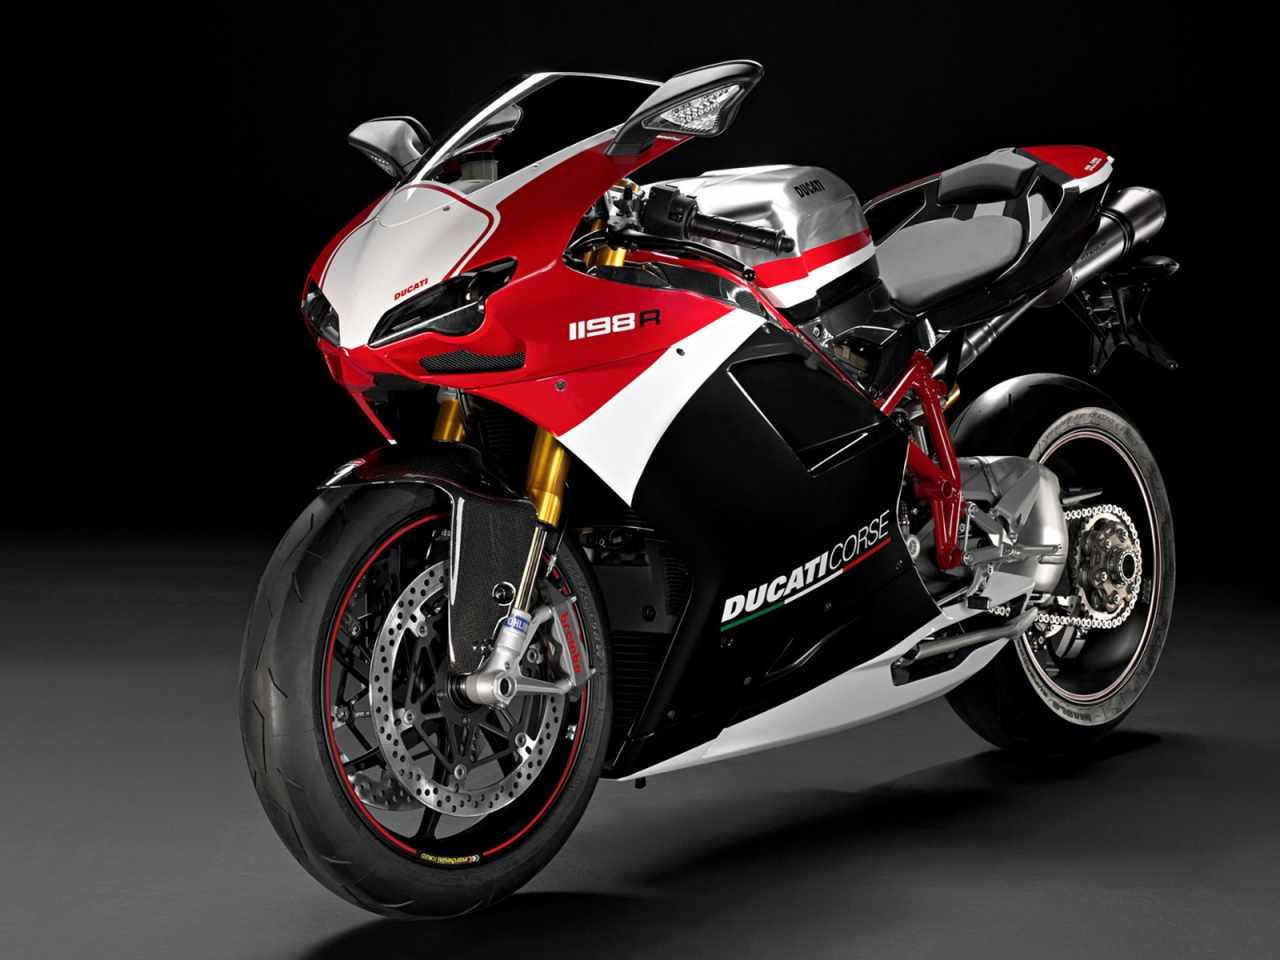 Ducati Superbike-1198-R-Corse for 1280 x 960 resolution